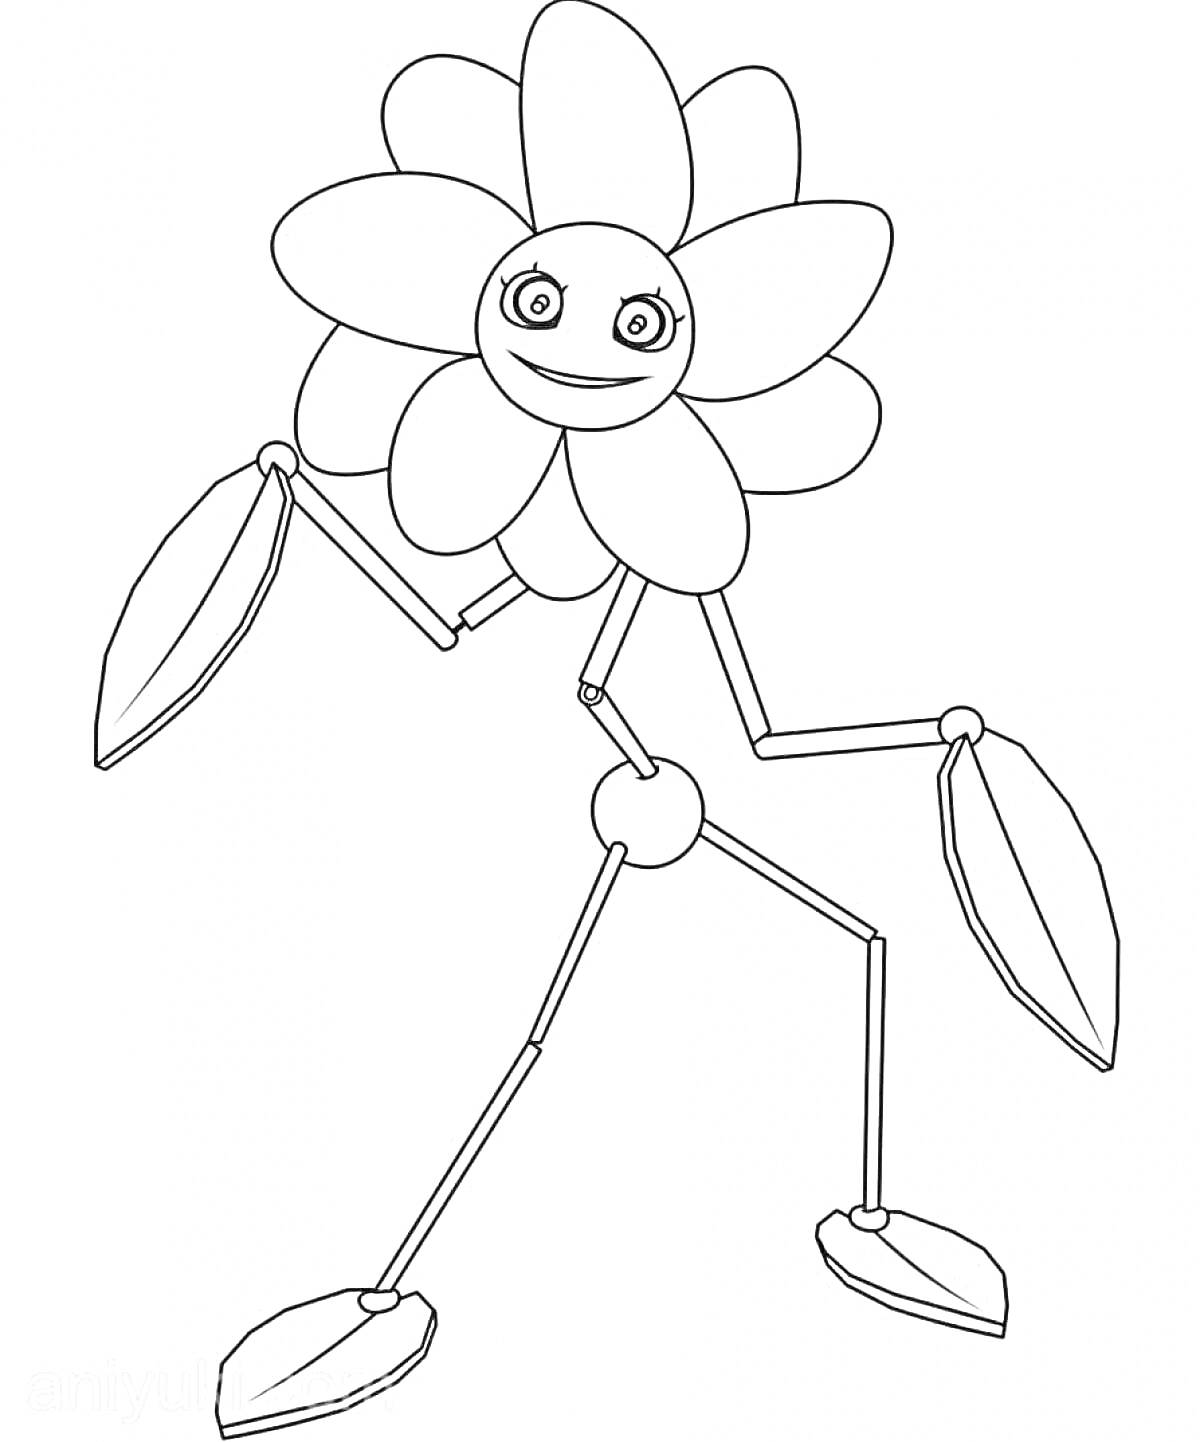 Раскраска Цветок с лицом из игры Poppy Playtime с длинными руками и ногами